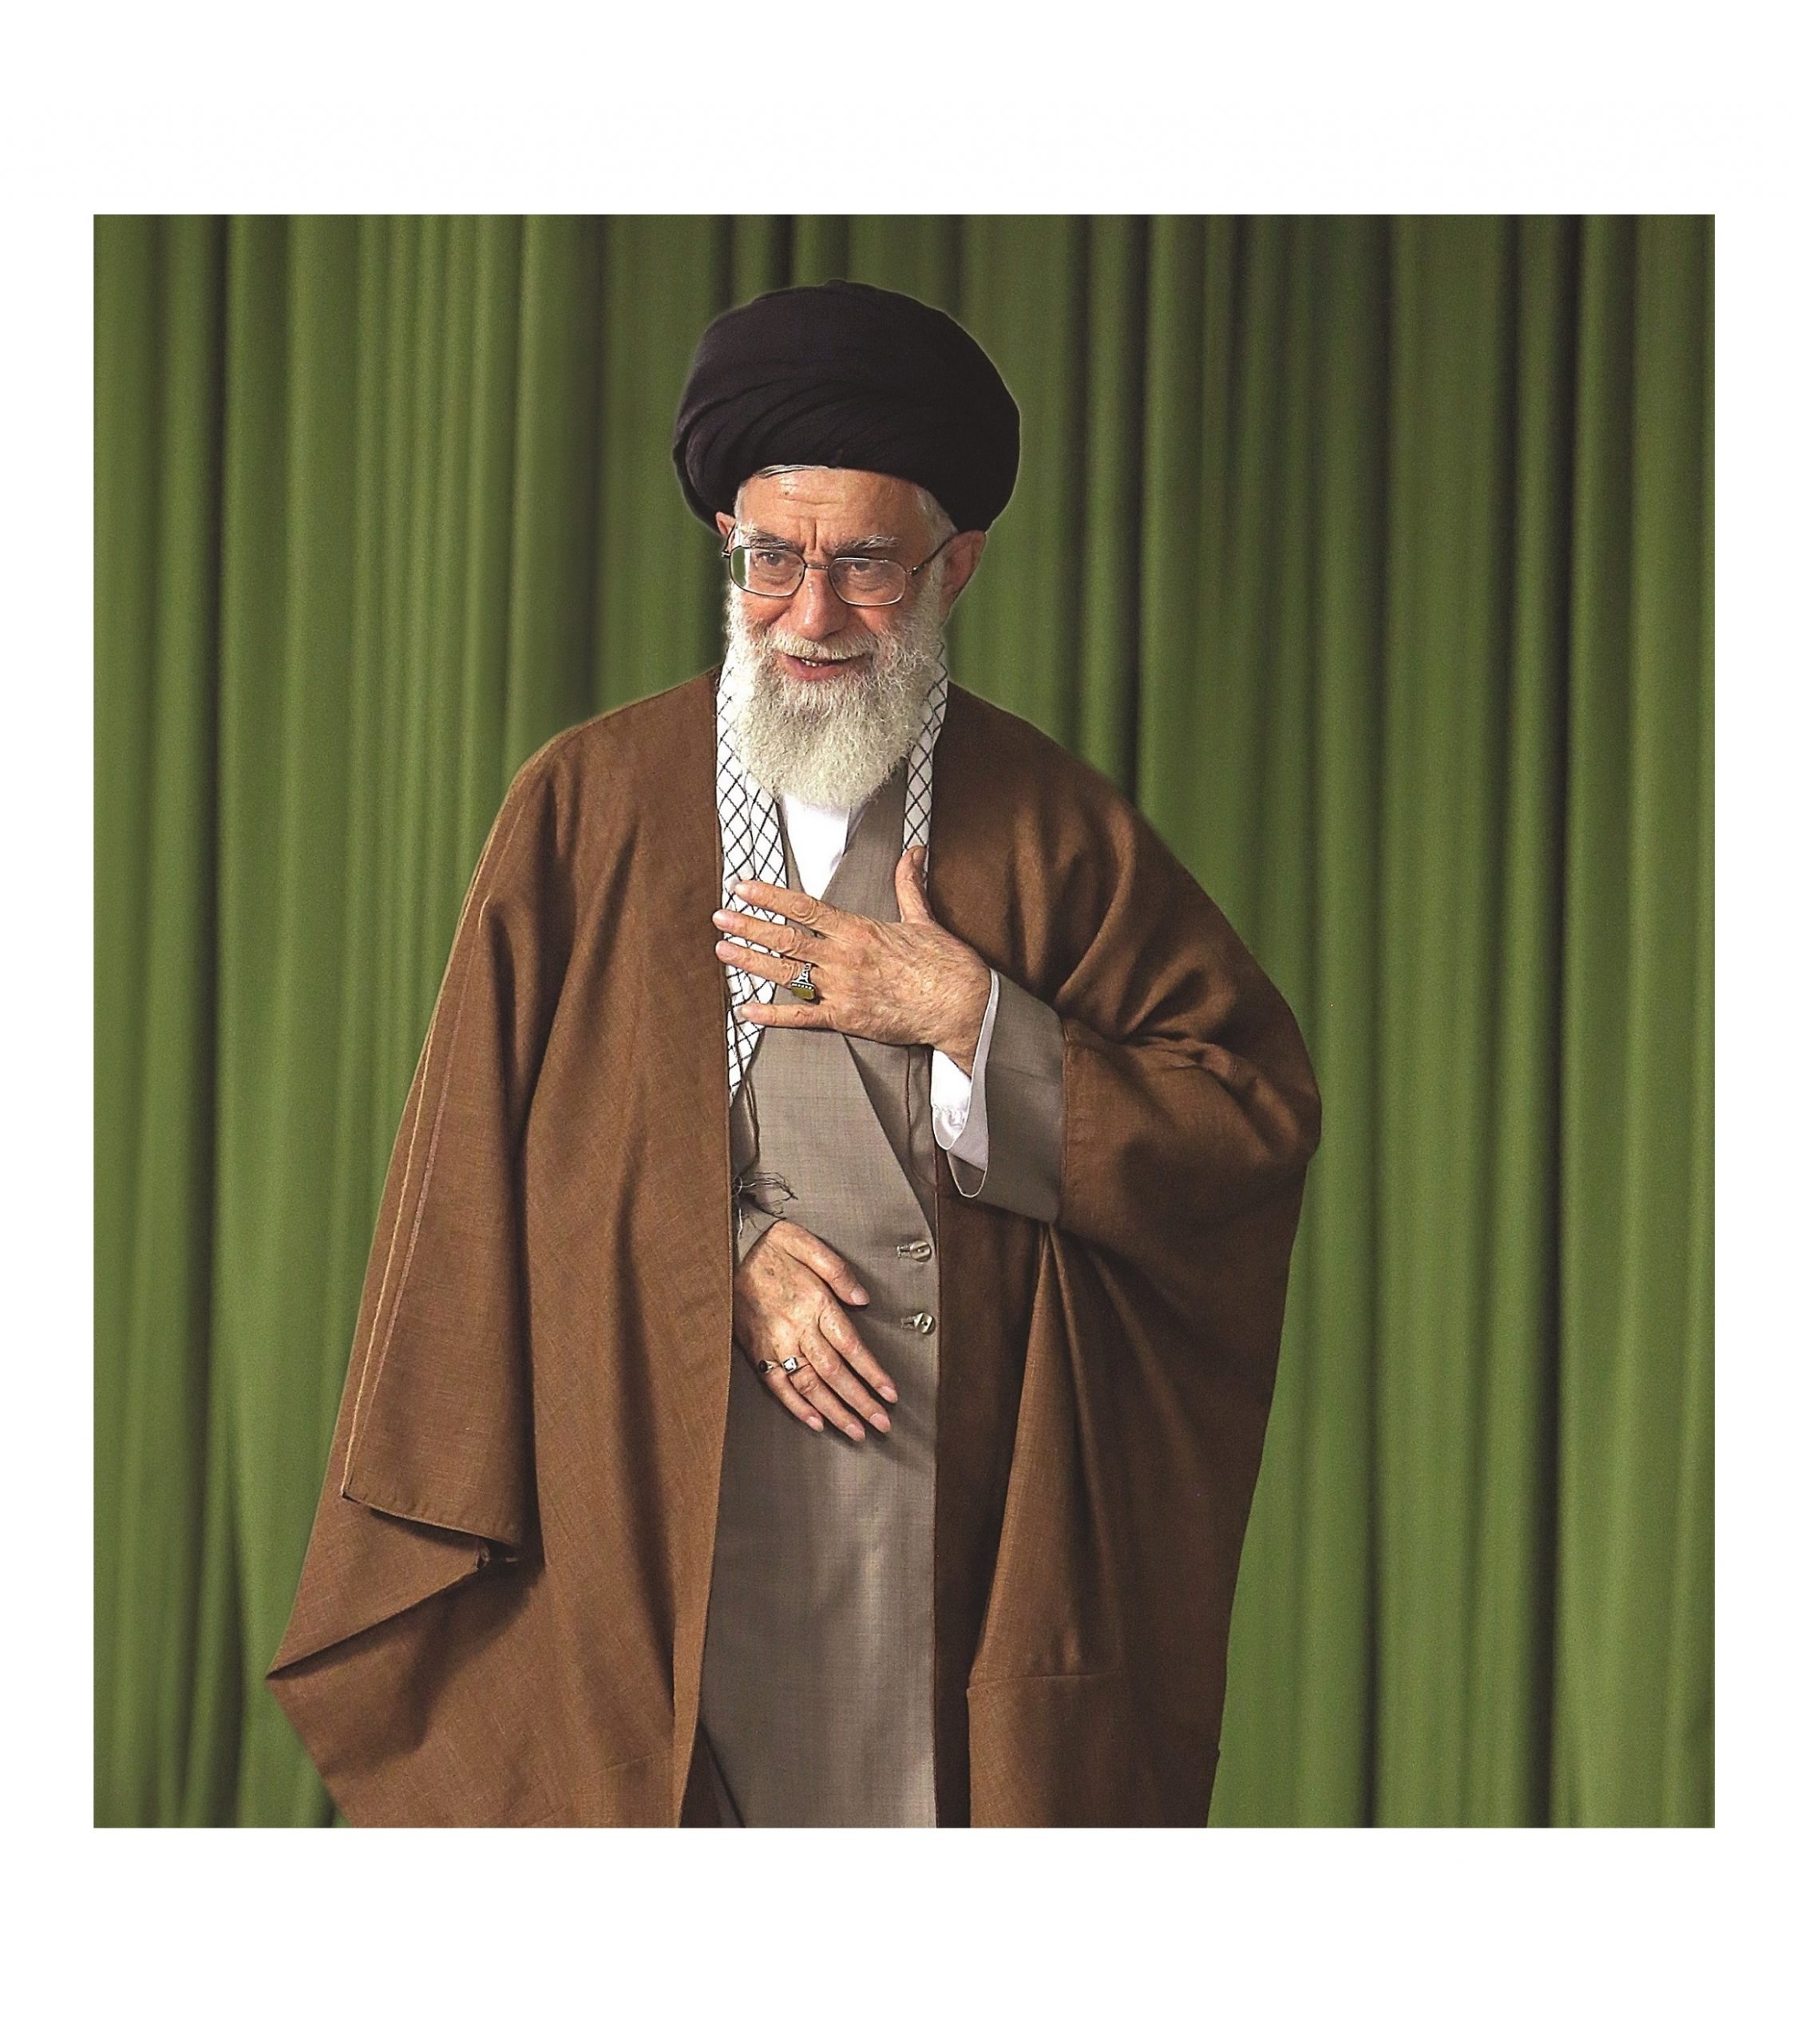 ابلاغیه رهبر انقلاب اسلامی در موافقت با آزادسازی سهام عدالت